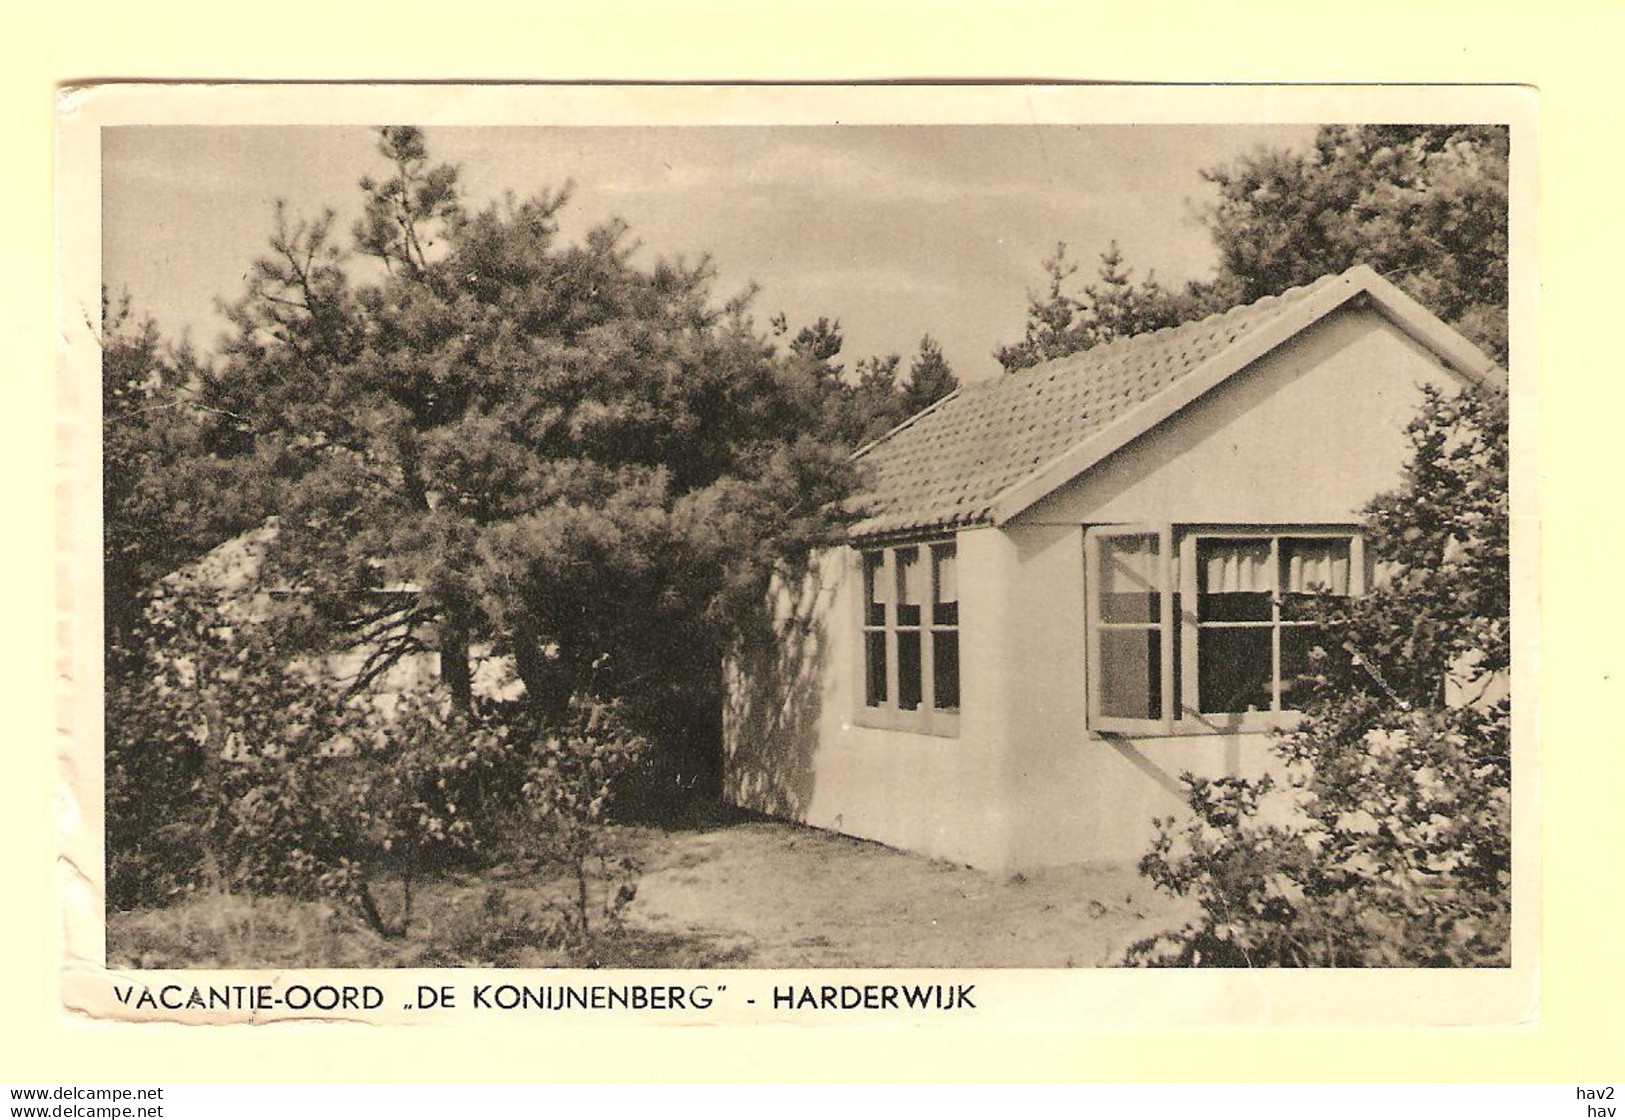 Harderwijk Vacantie-Oord De Konijnenberg 1952 RY23176 - Harderwijk